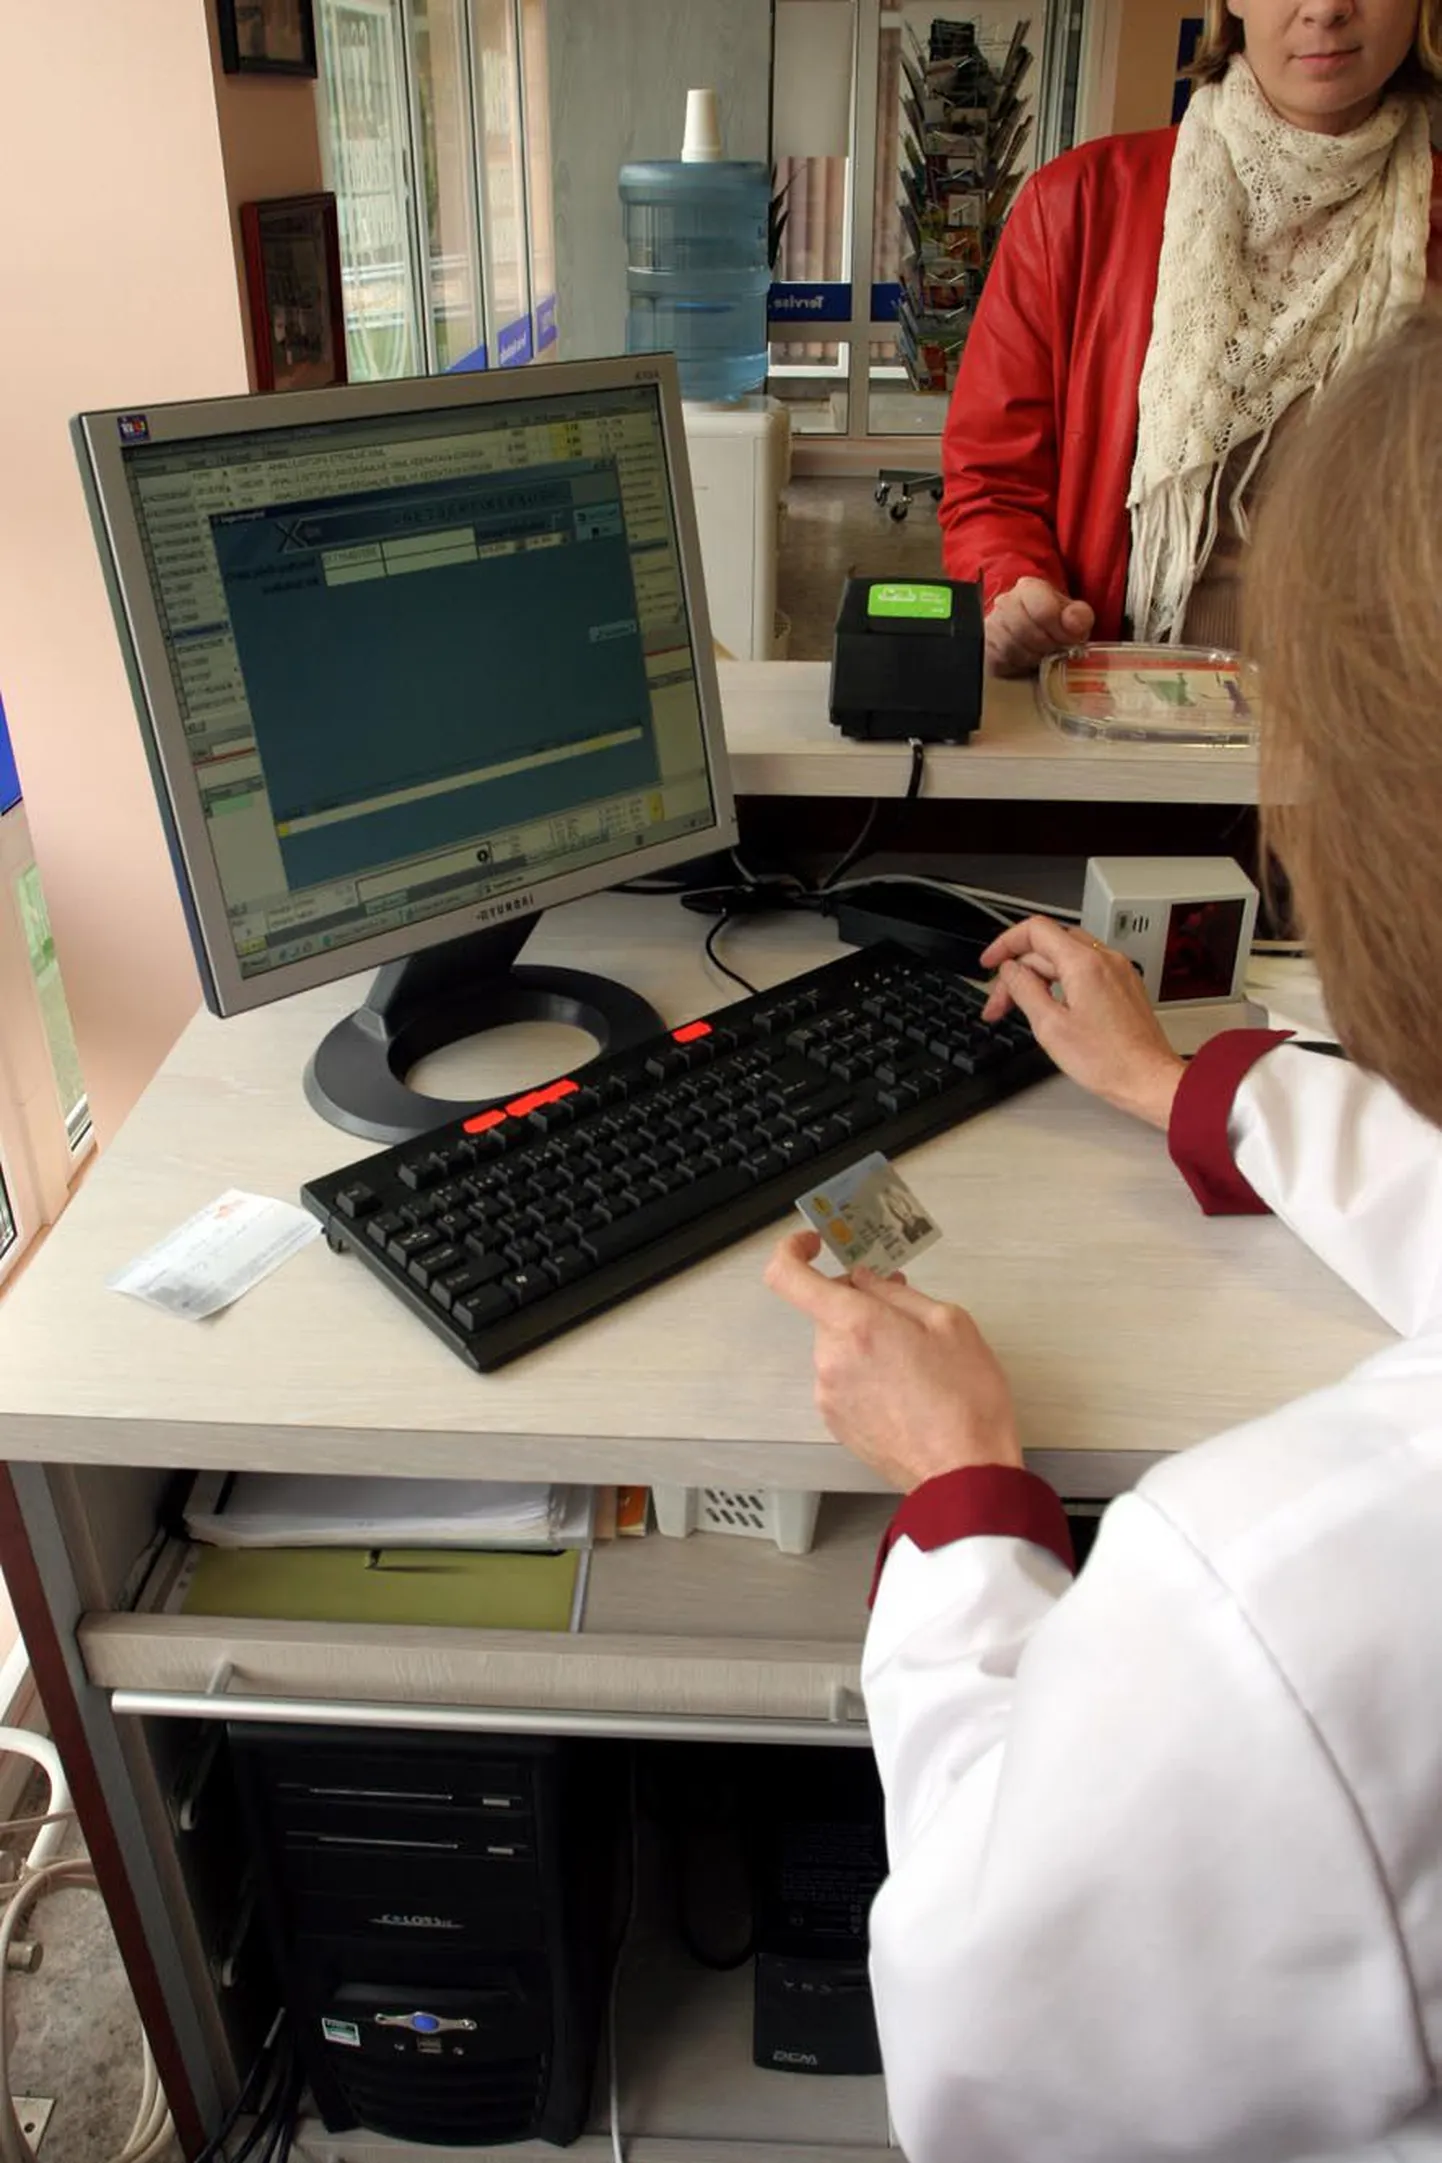 Eestis registreerimata ravimeid ostma minnes ei piisa ainult digiretseptist, vaid kaasas peab olema ka perearsti juures Ravimiametile tehtud taotlus.